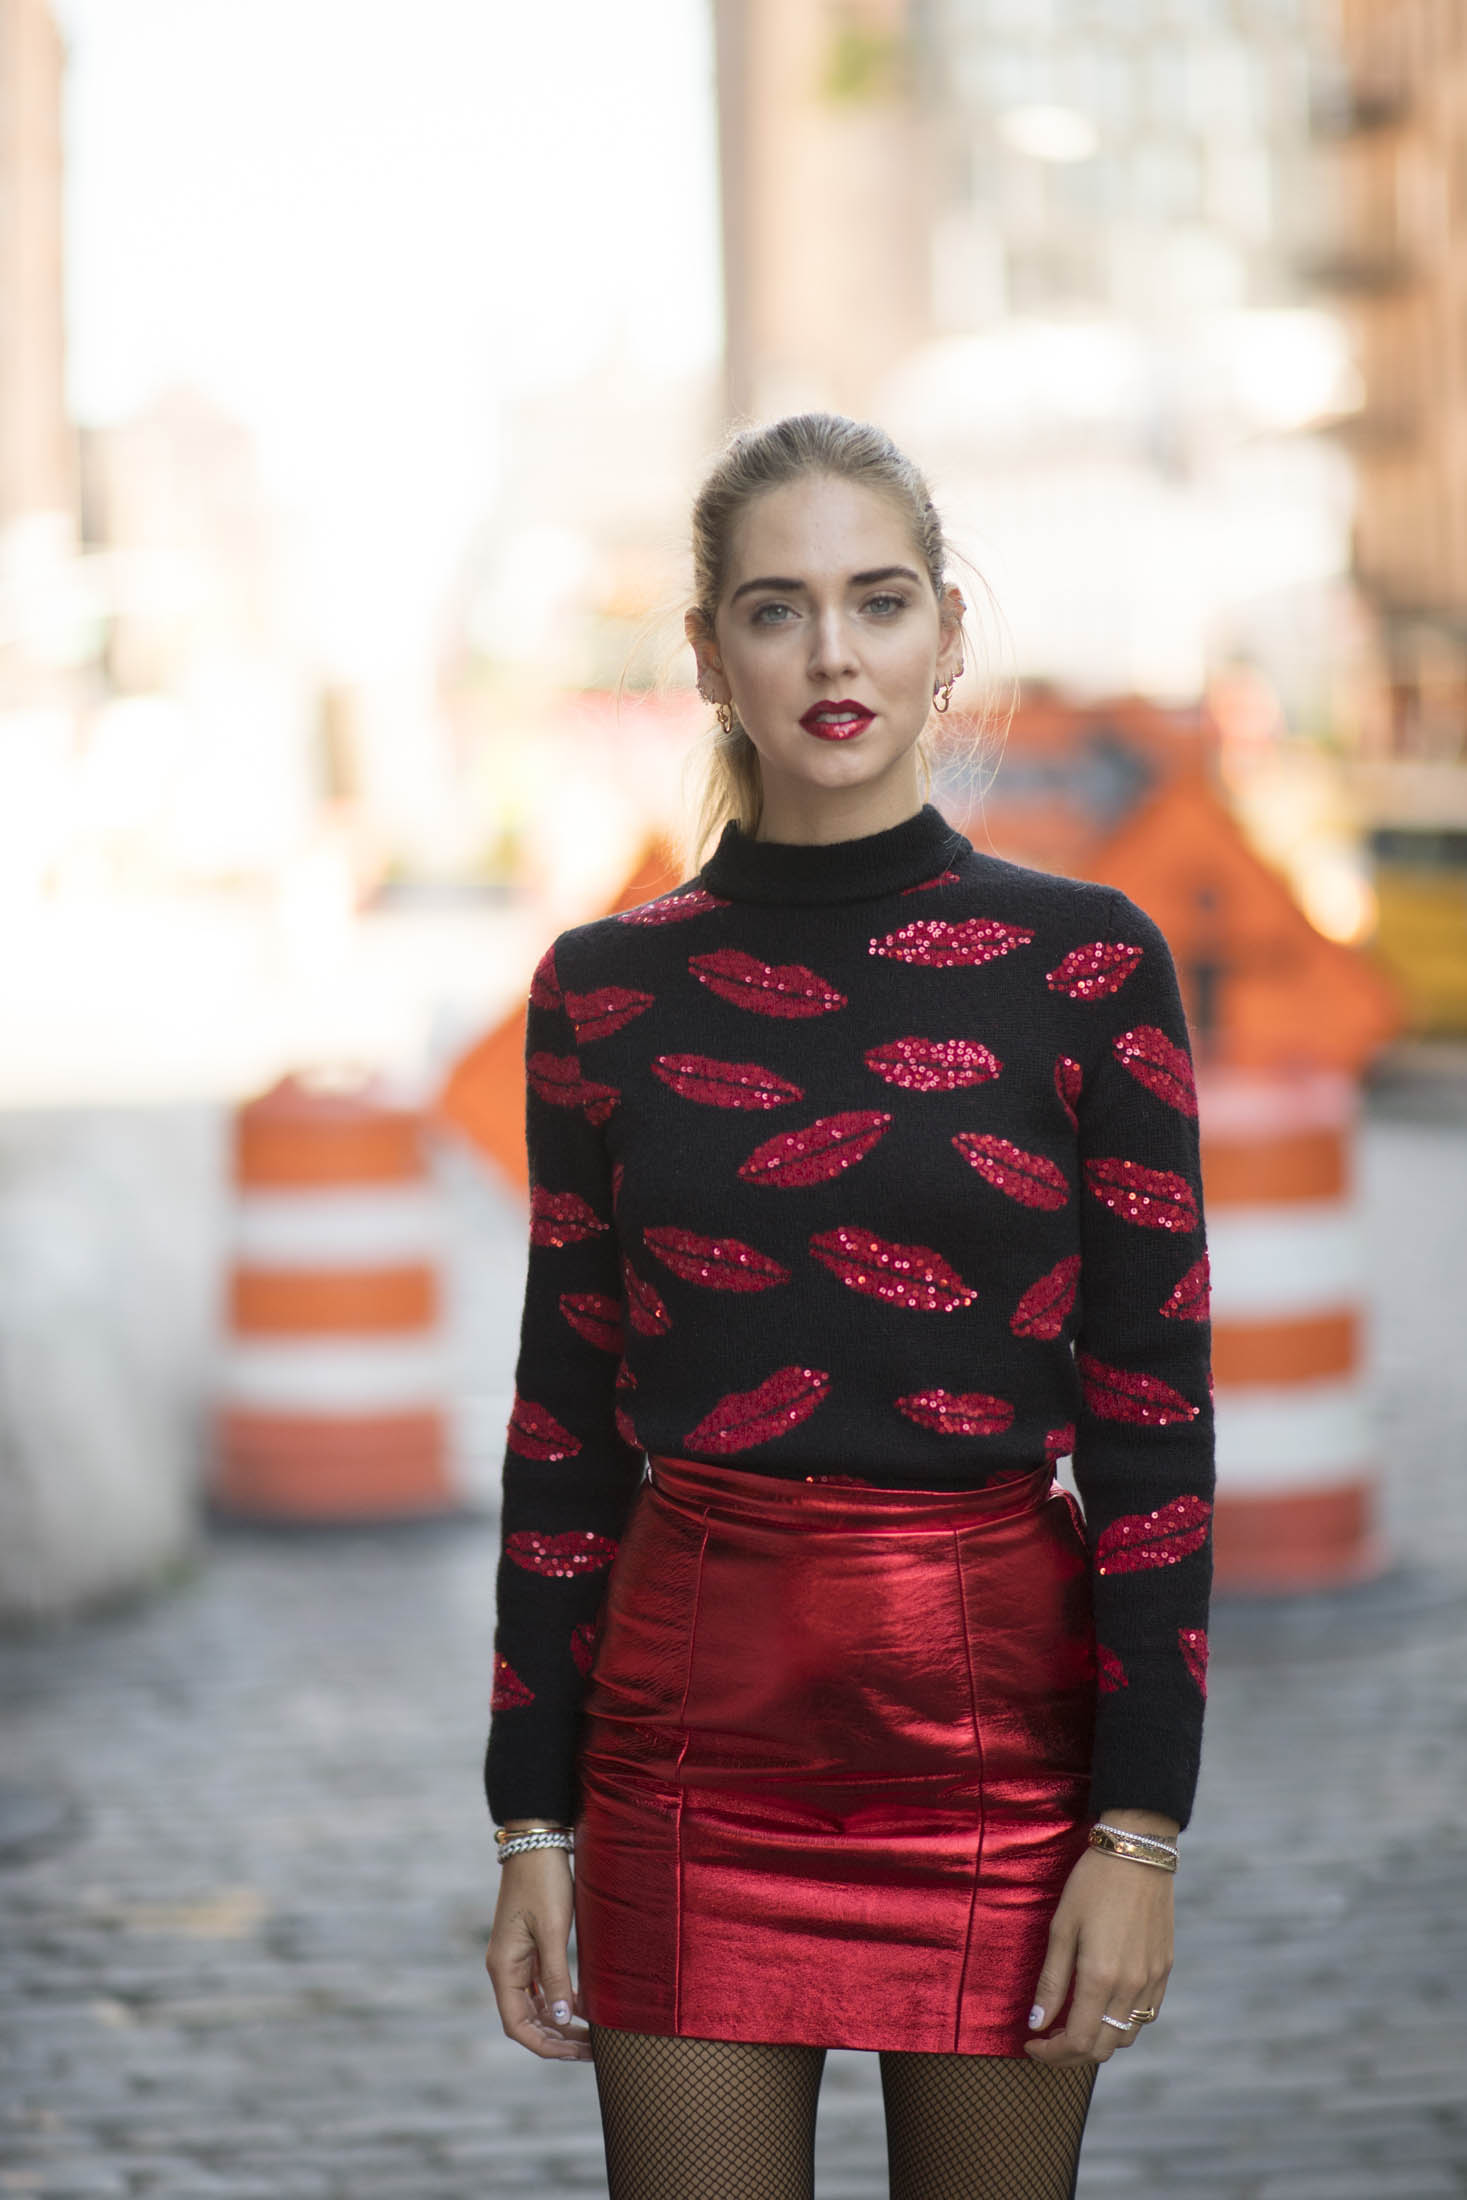 Chiara Ferragni attends New York Fashion Week